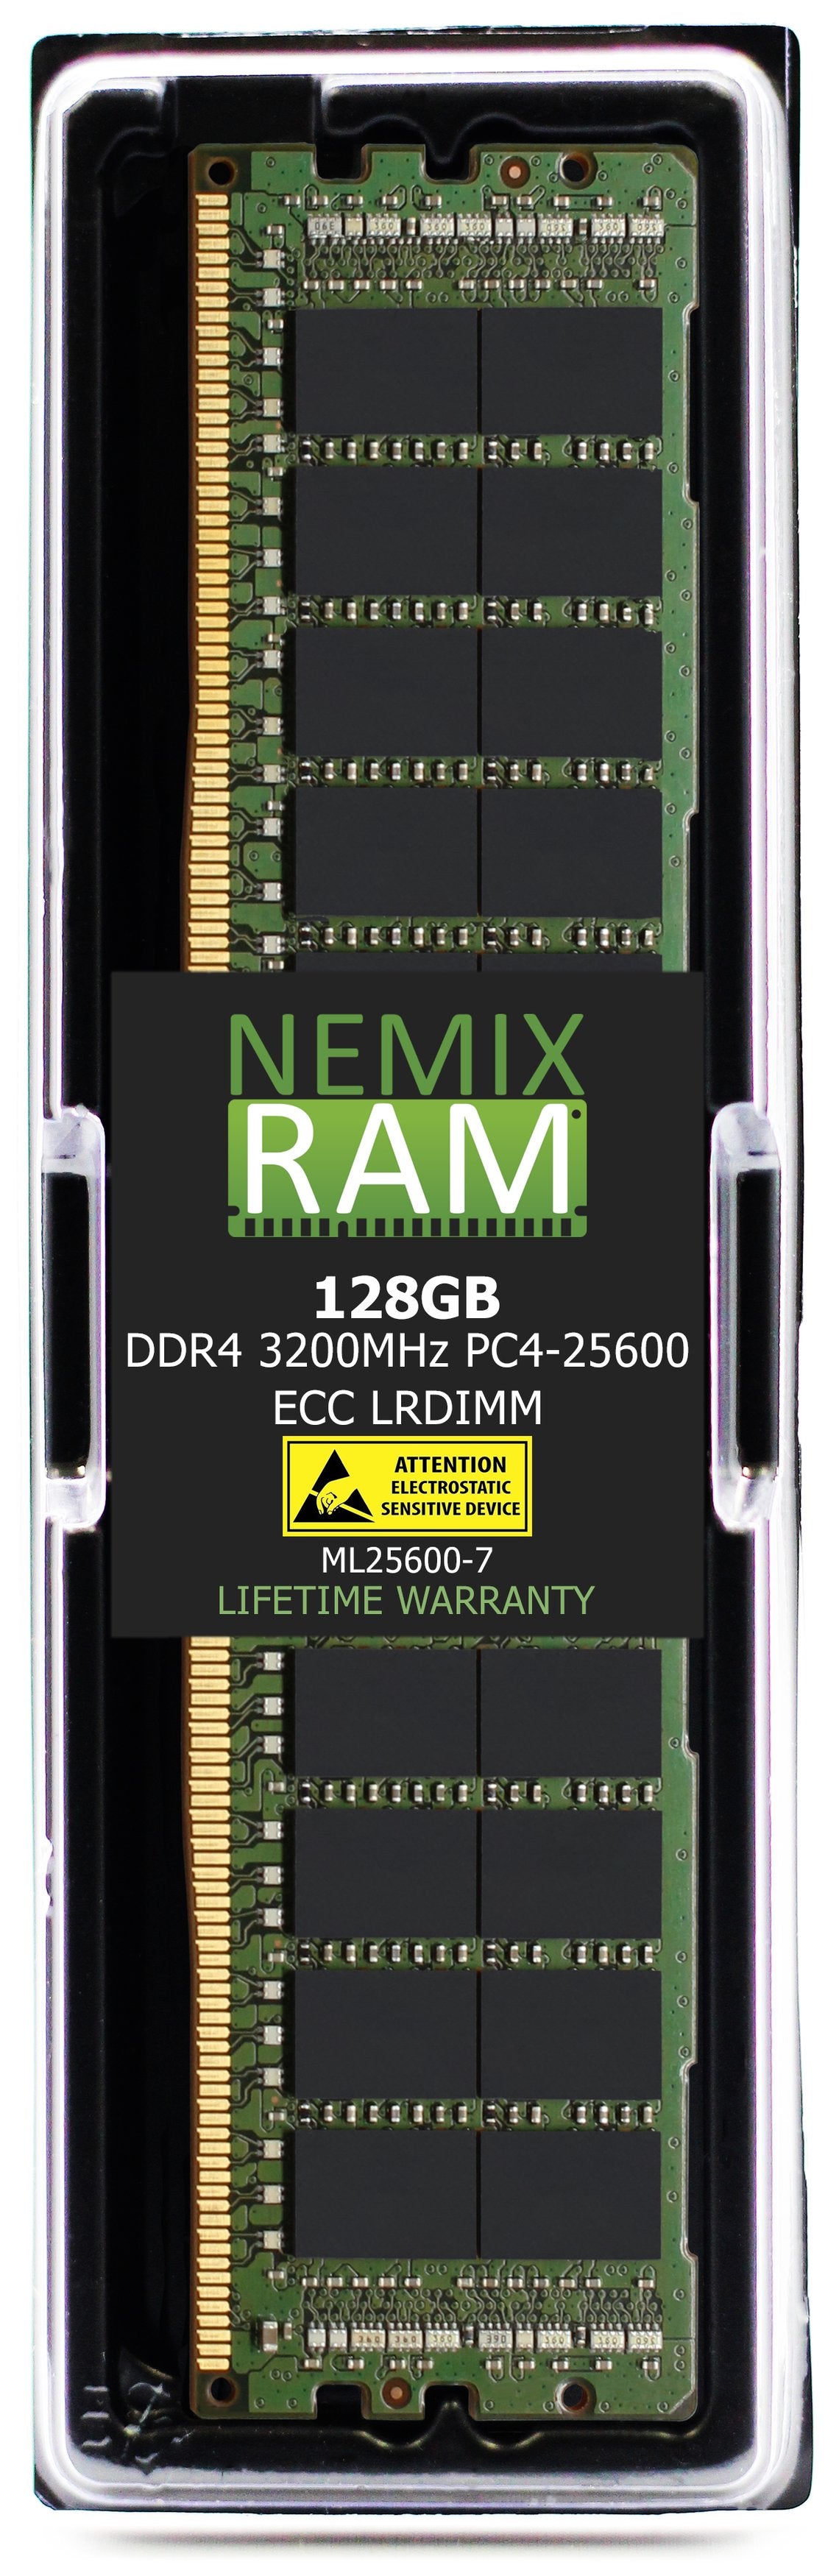 128GB DDR4 3200MHZ PC4-25600 LRDIMM Compatible with Supermicro MEM-SMP-DR412L-CL02-LR32